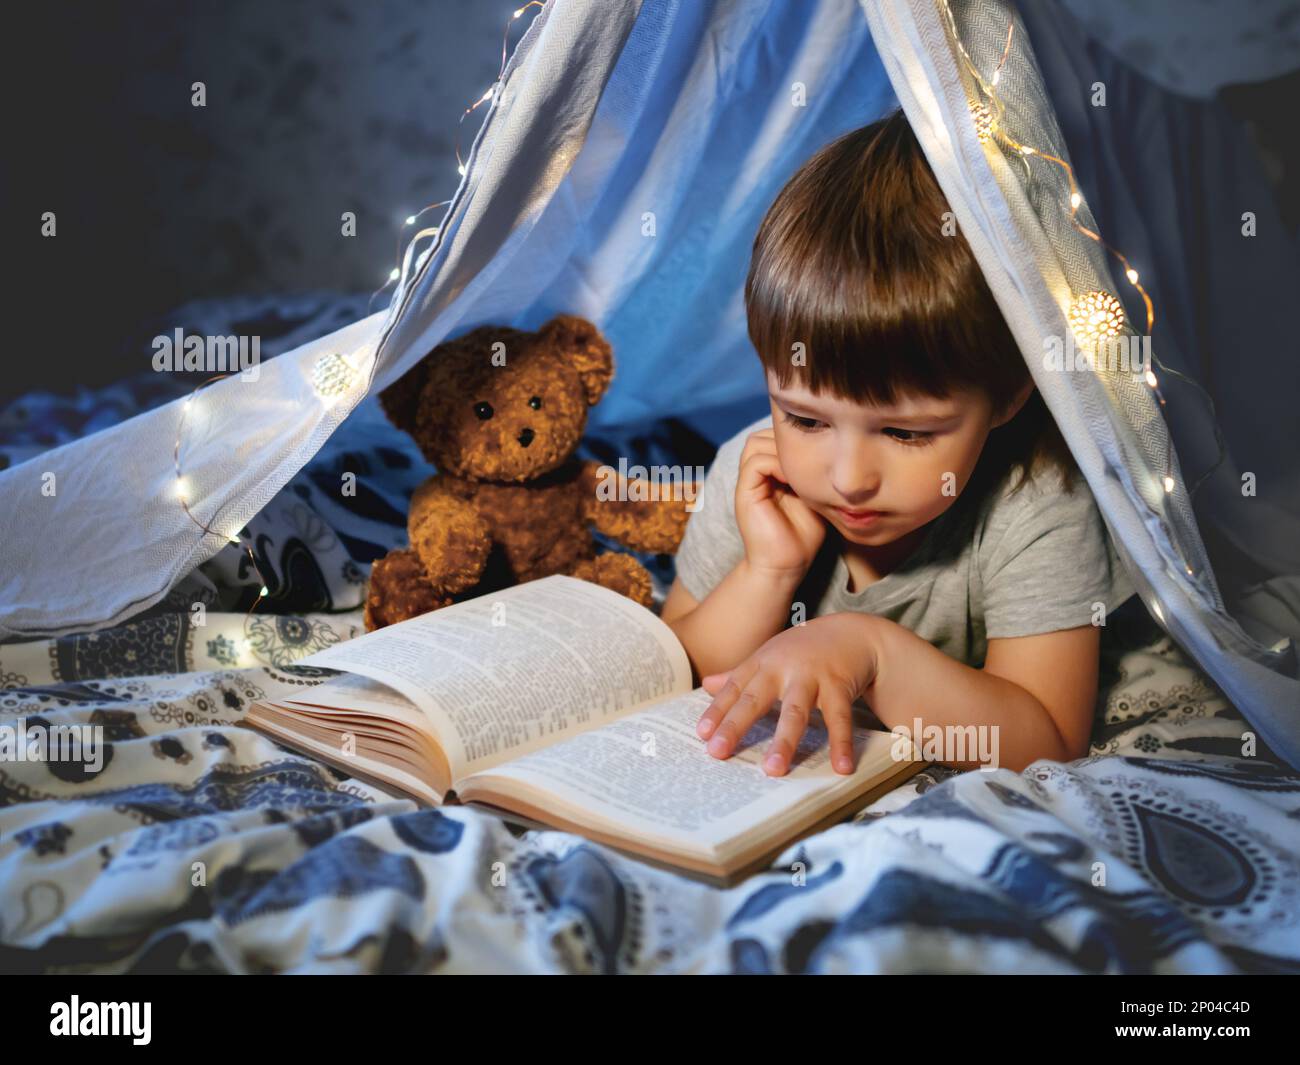 Il ragazzino legge il libro. Il bambino gioca in tenda fatta di lenzuola di lino con lampadine sul letto. Serata accogliente con il libro preferito. Foto Stock